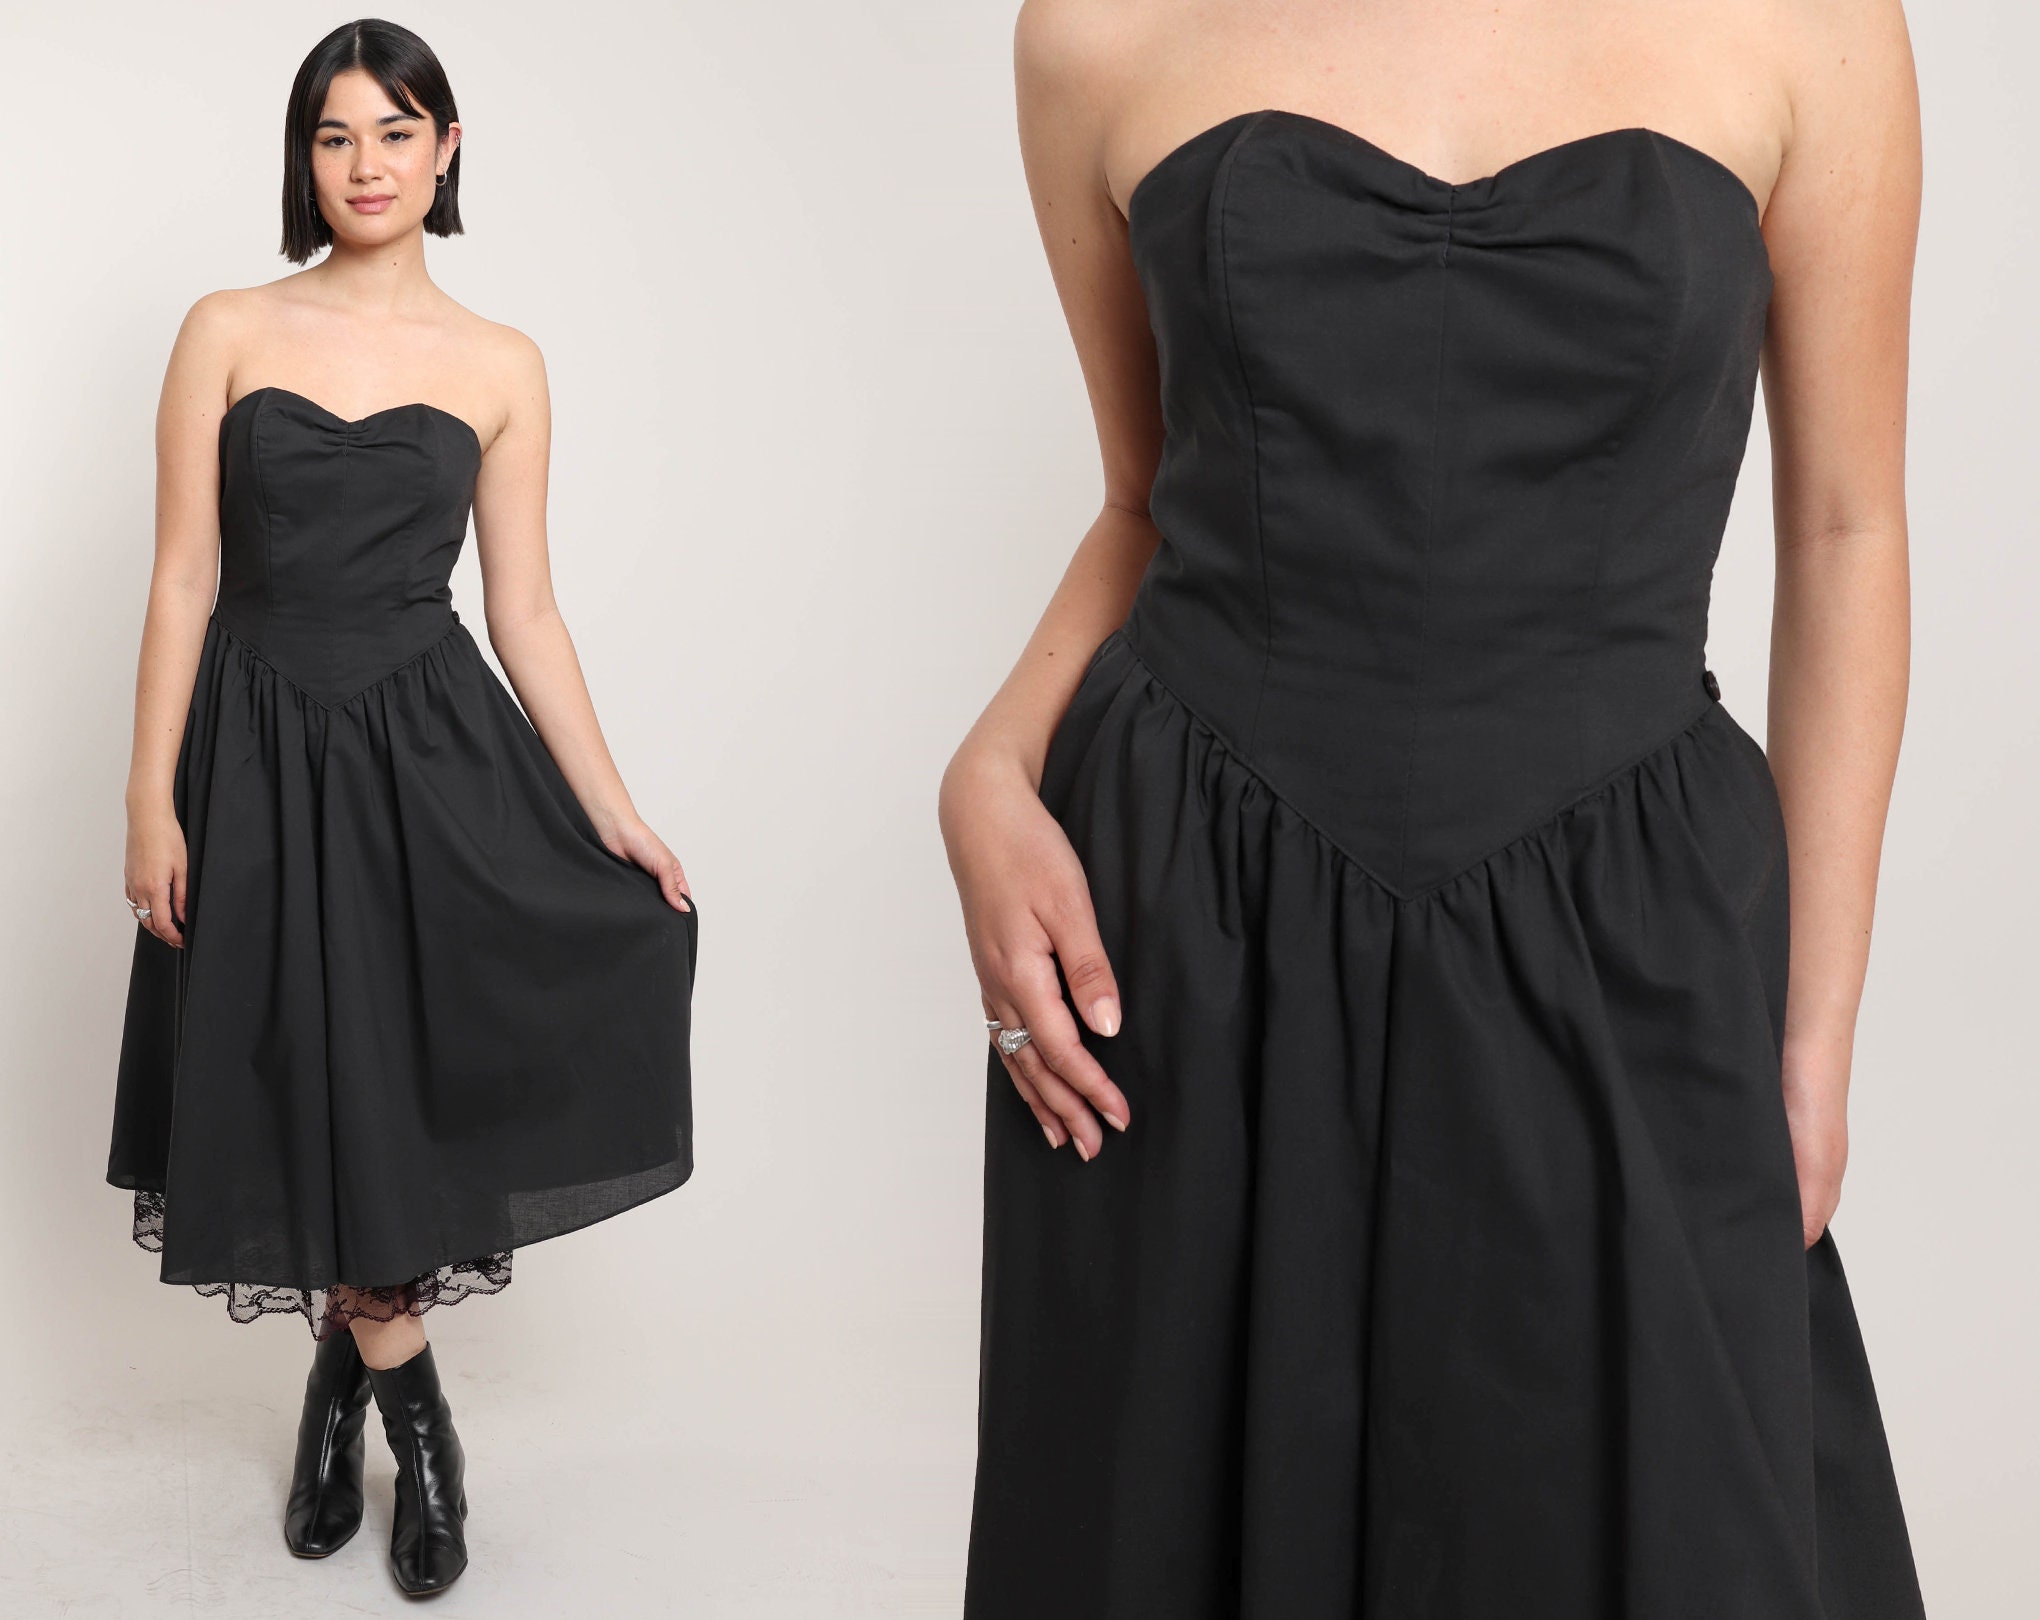 CHRISTIAN DIOR Black Strapless Knee Length Sleeveless Dress, UK 16